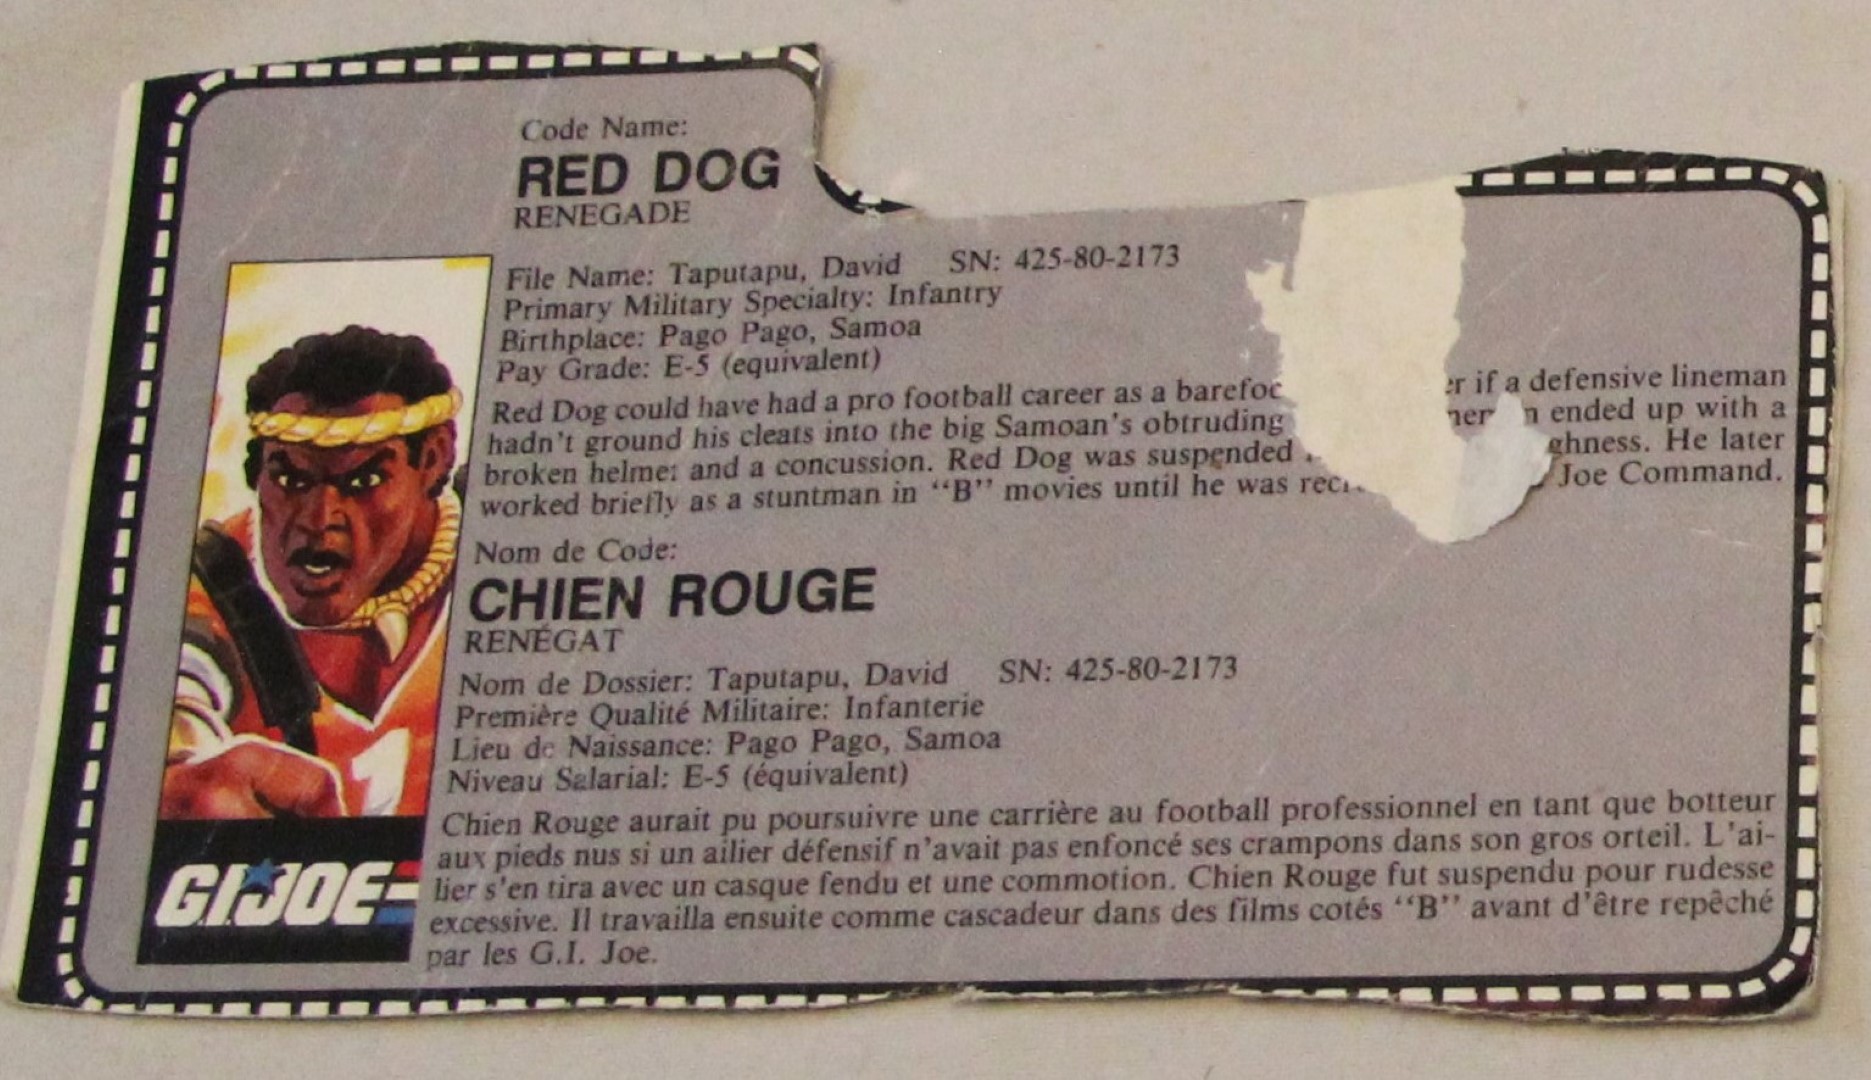 1987 reddog file card